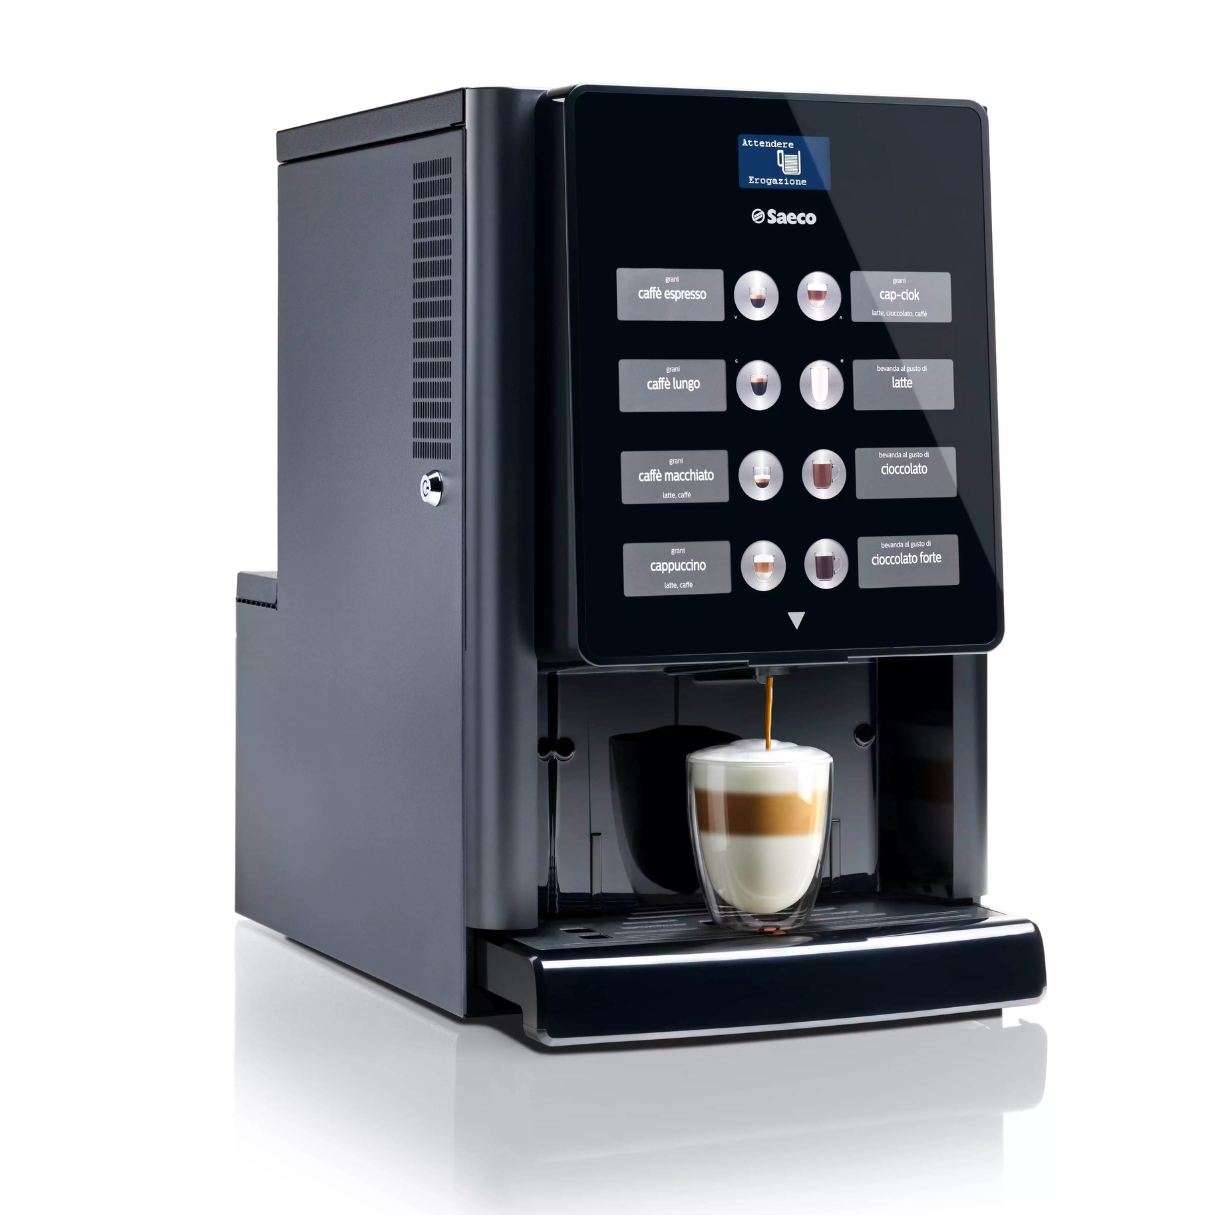 Iperautomatica Saeco - Cafetera Profesional Superautomática - Café